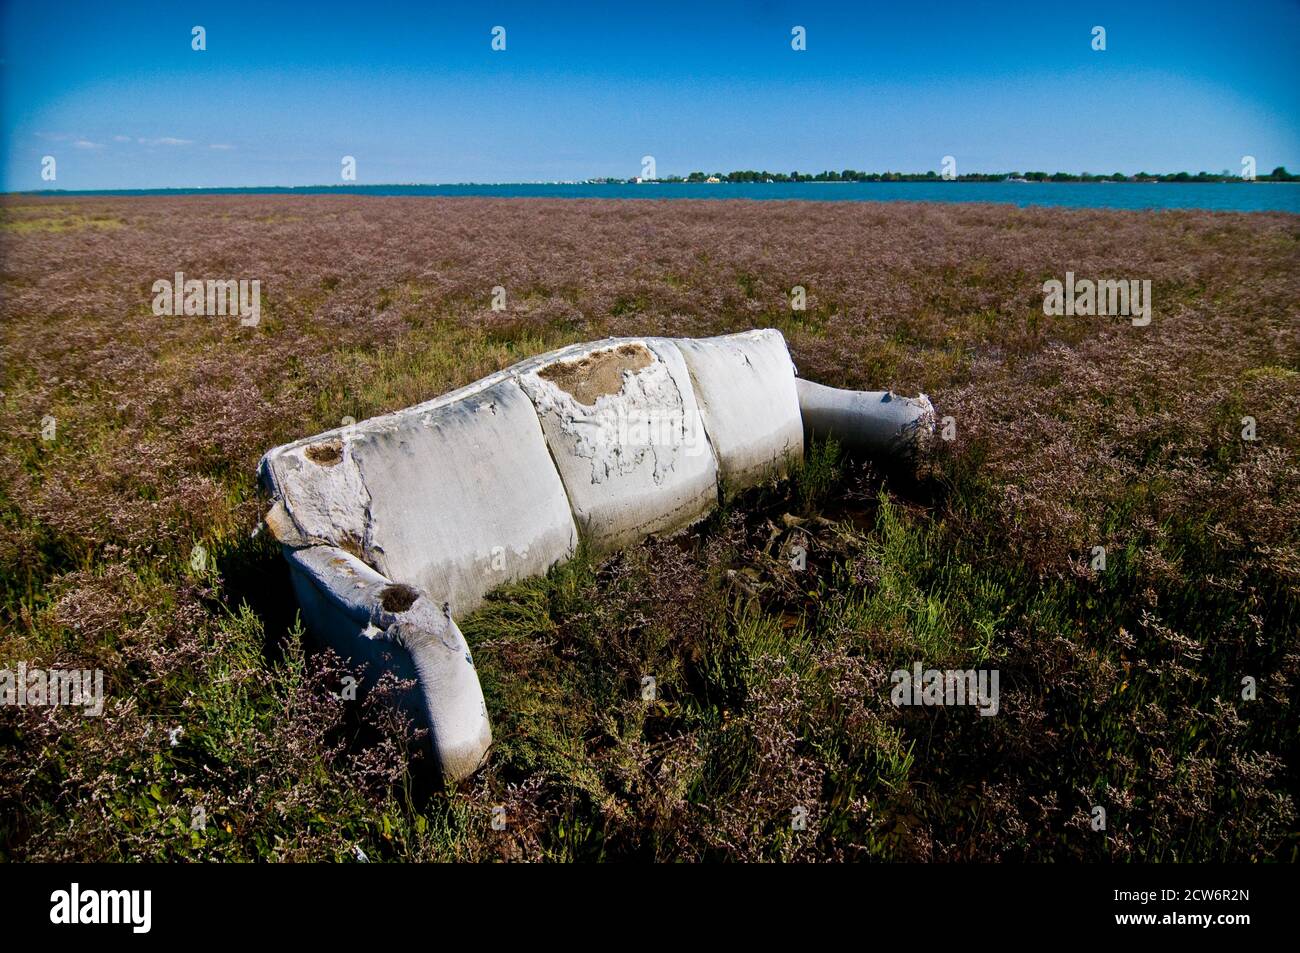 Un canapé en ruine perdu dans un champ parmi les mauvaises herbes Banque D'Images